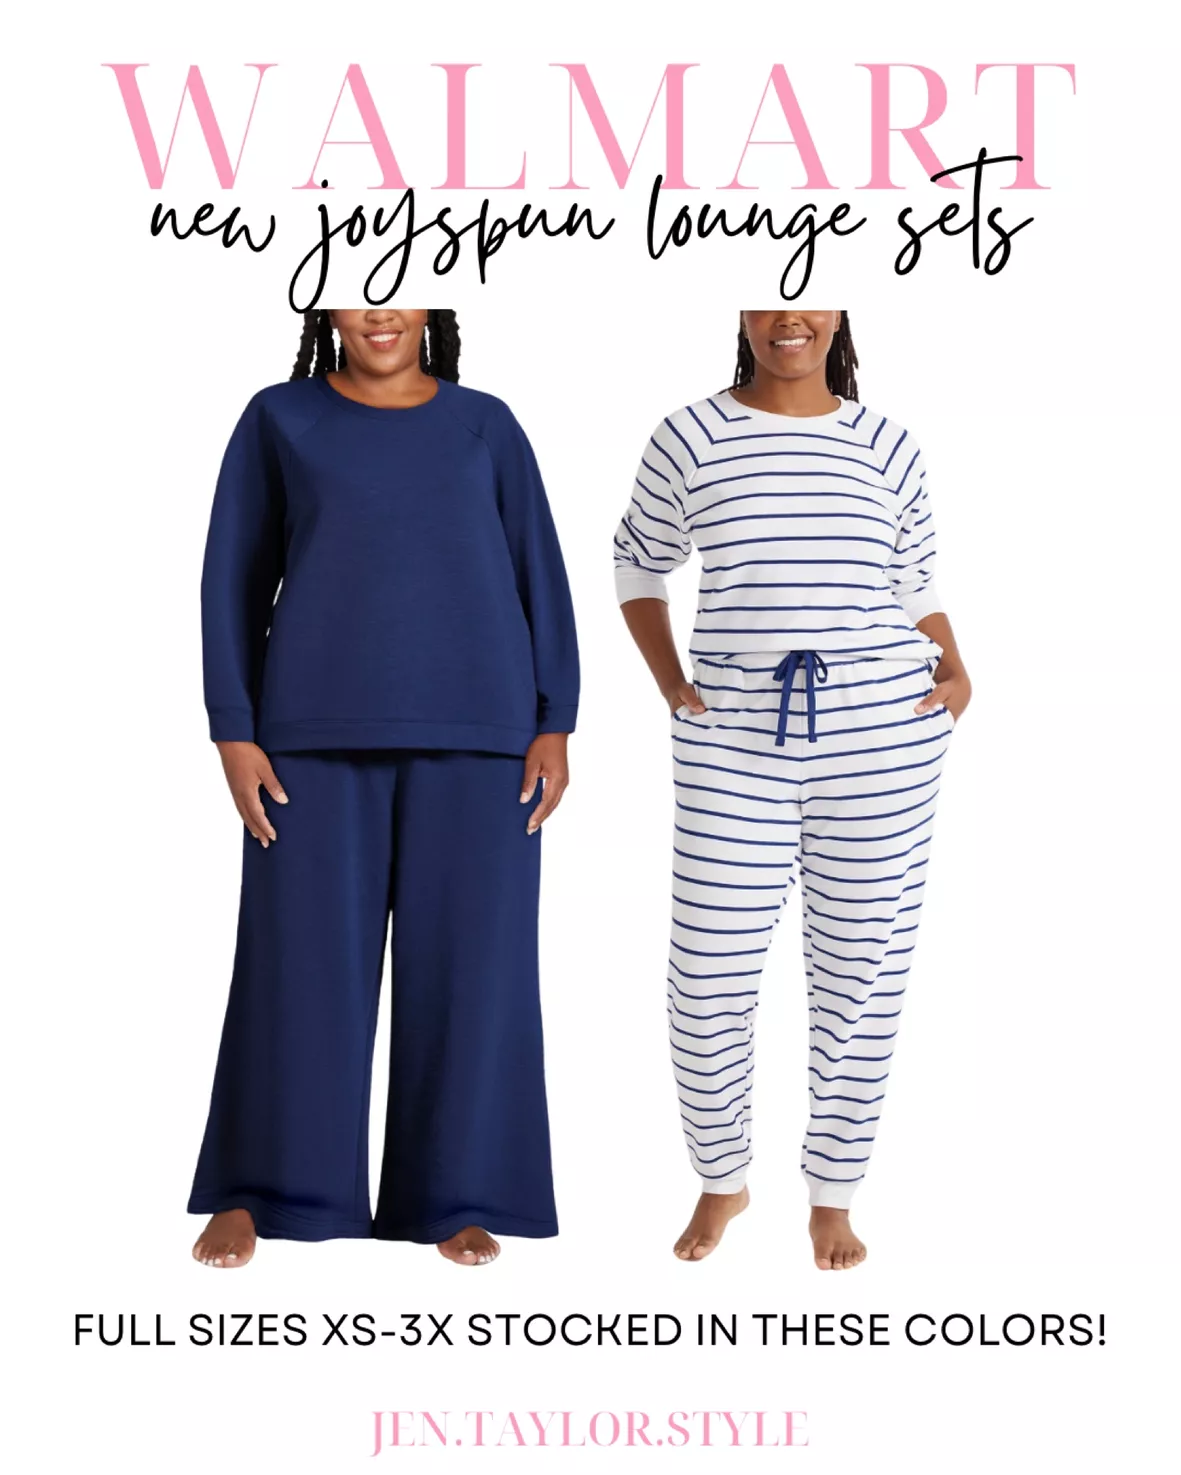 Joyspun Women's Sleep Fleece Top … curated on LTK